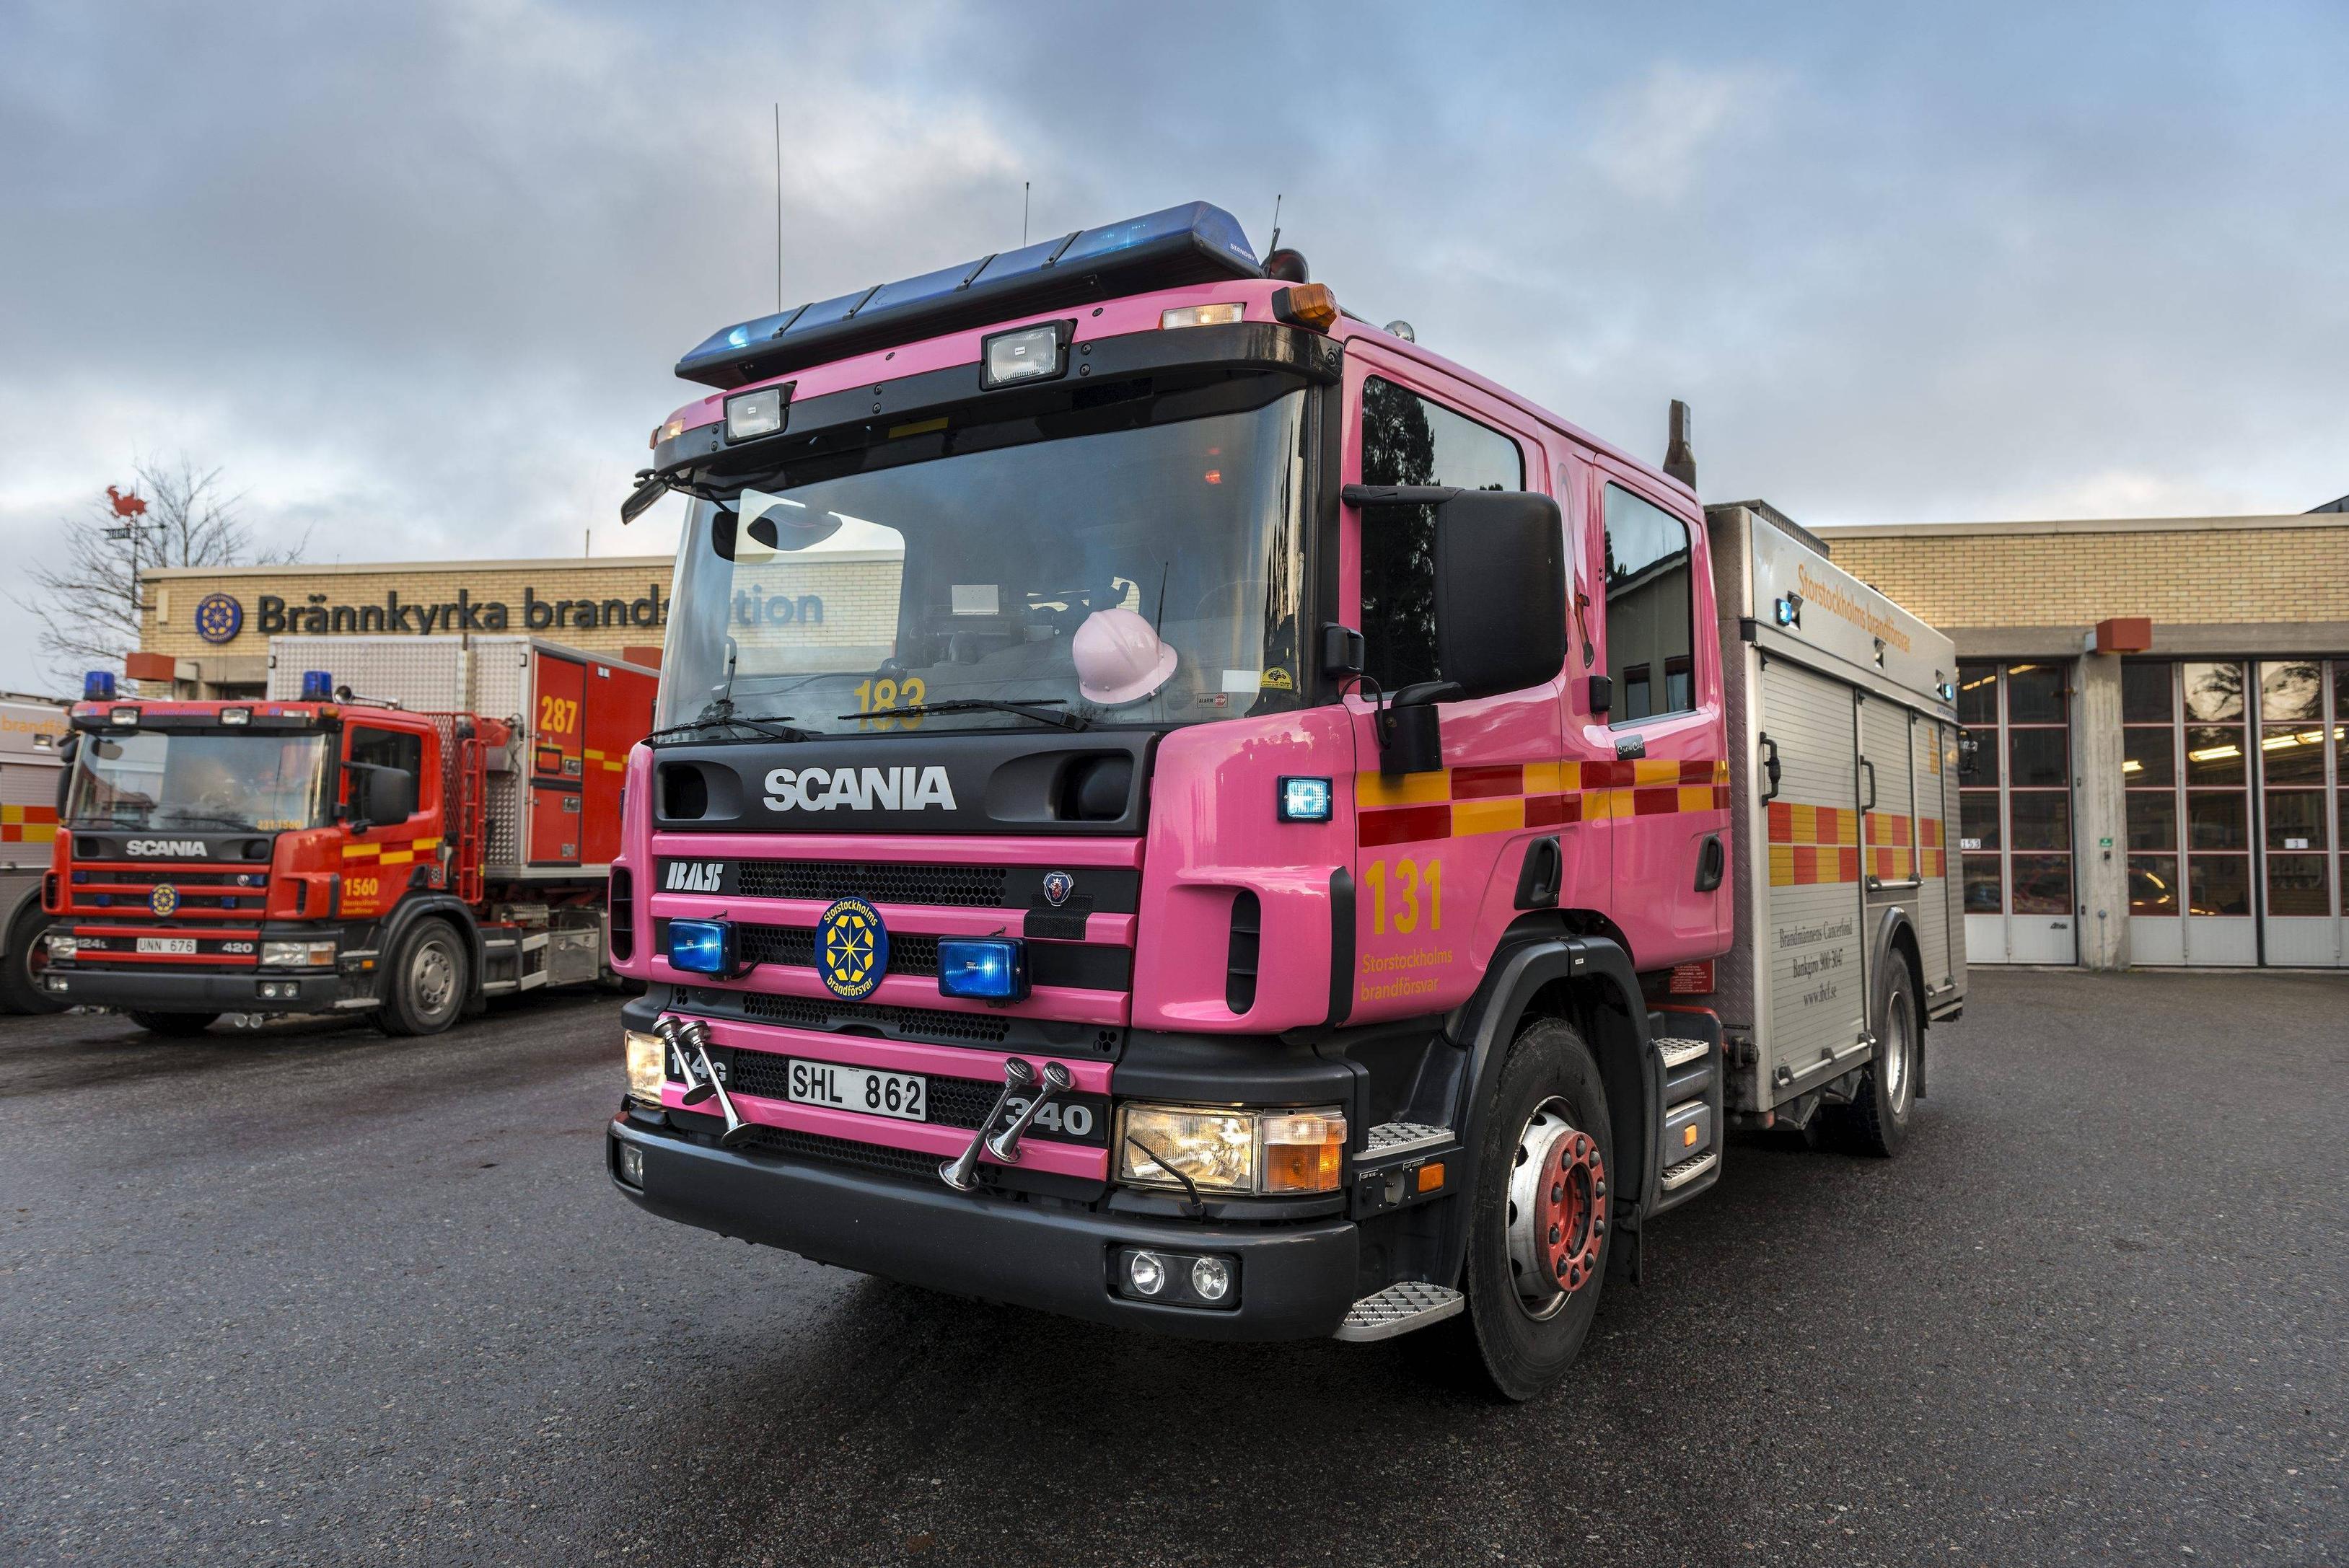 Scania firetruck wallpaperx2415